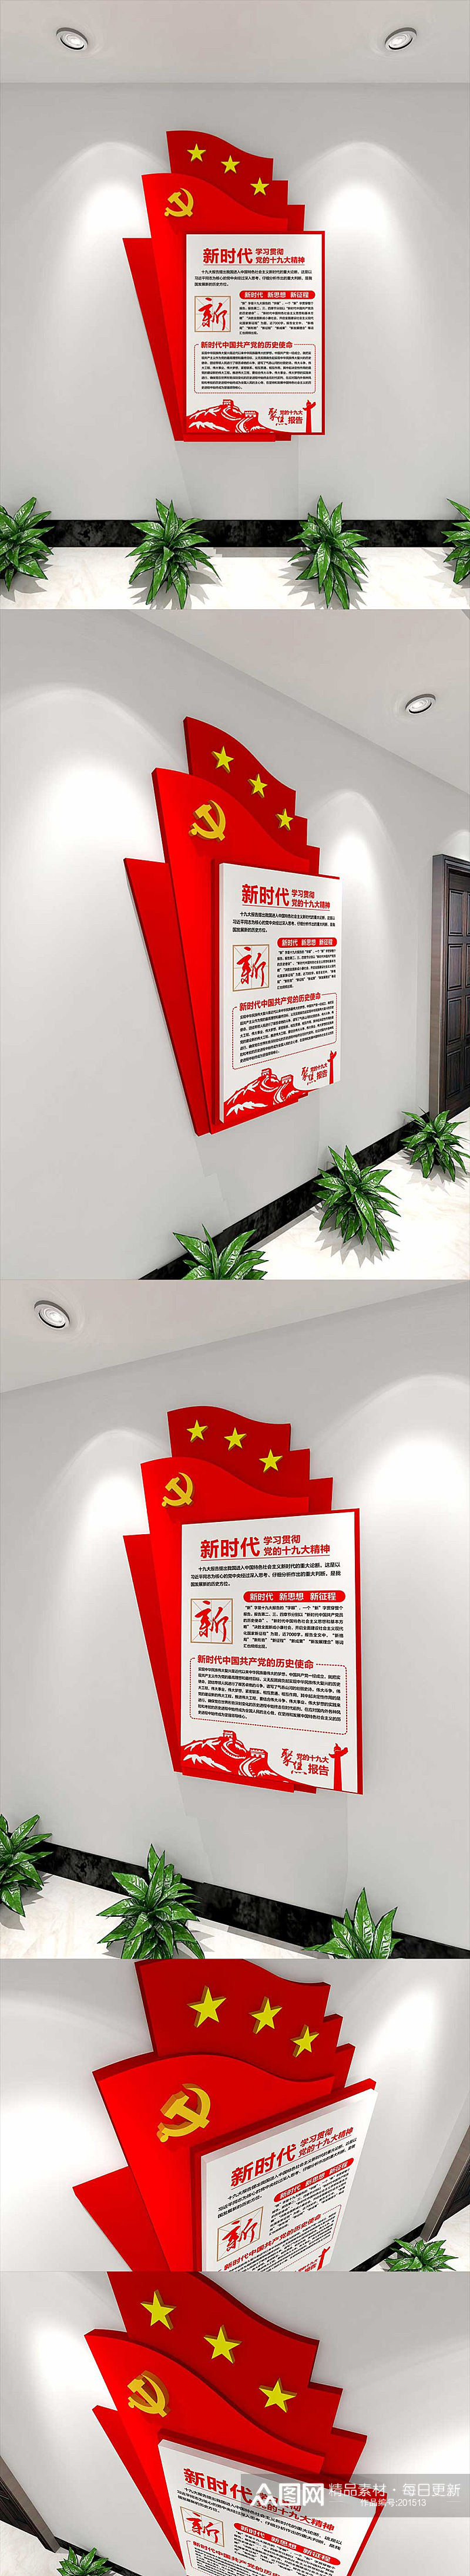 党员活动室走廊3D立体党建文化墙素材